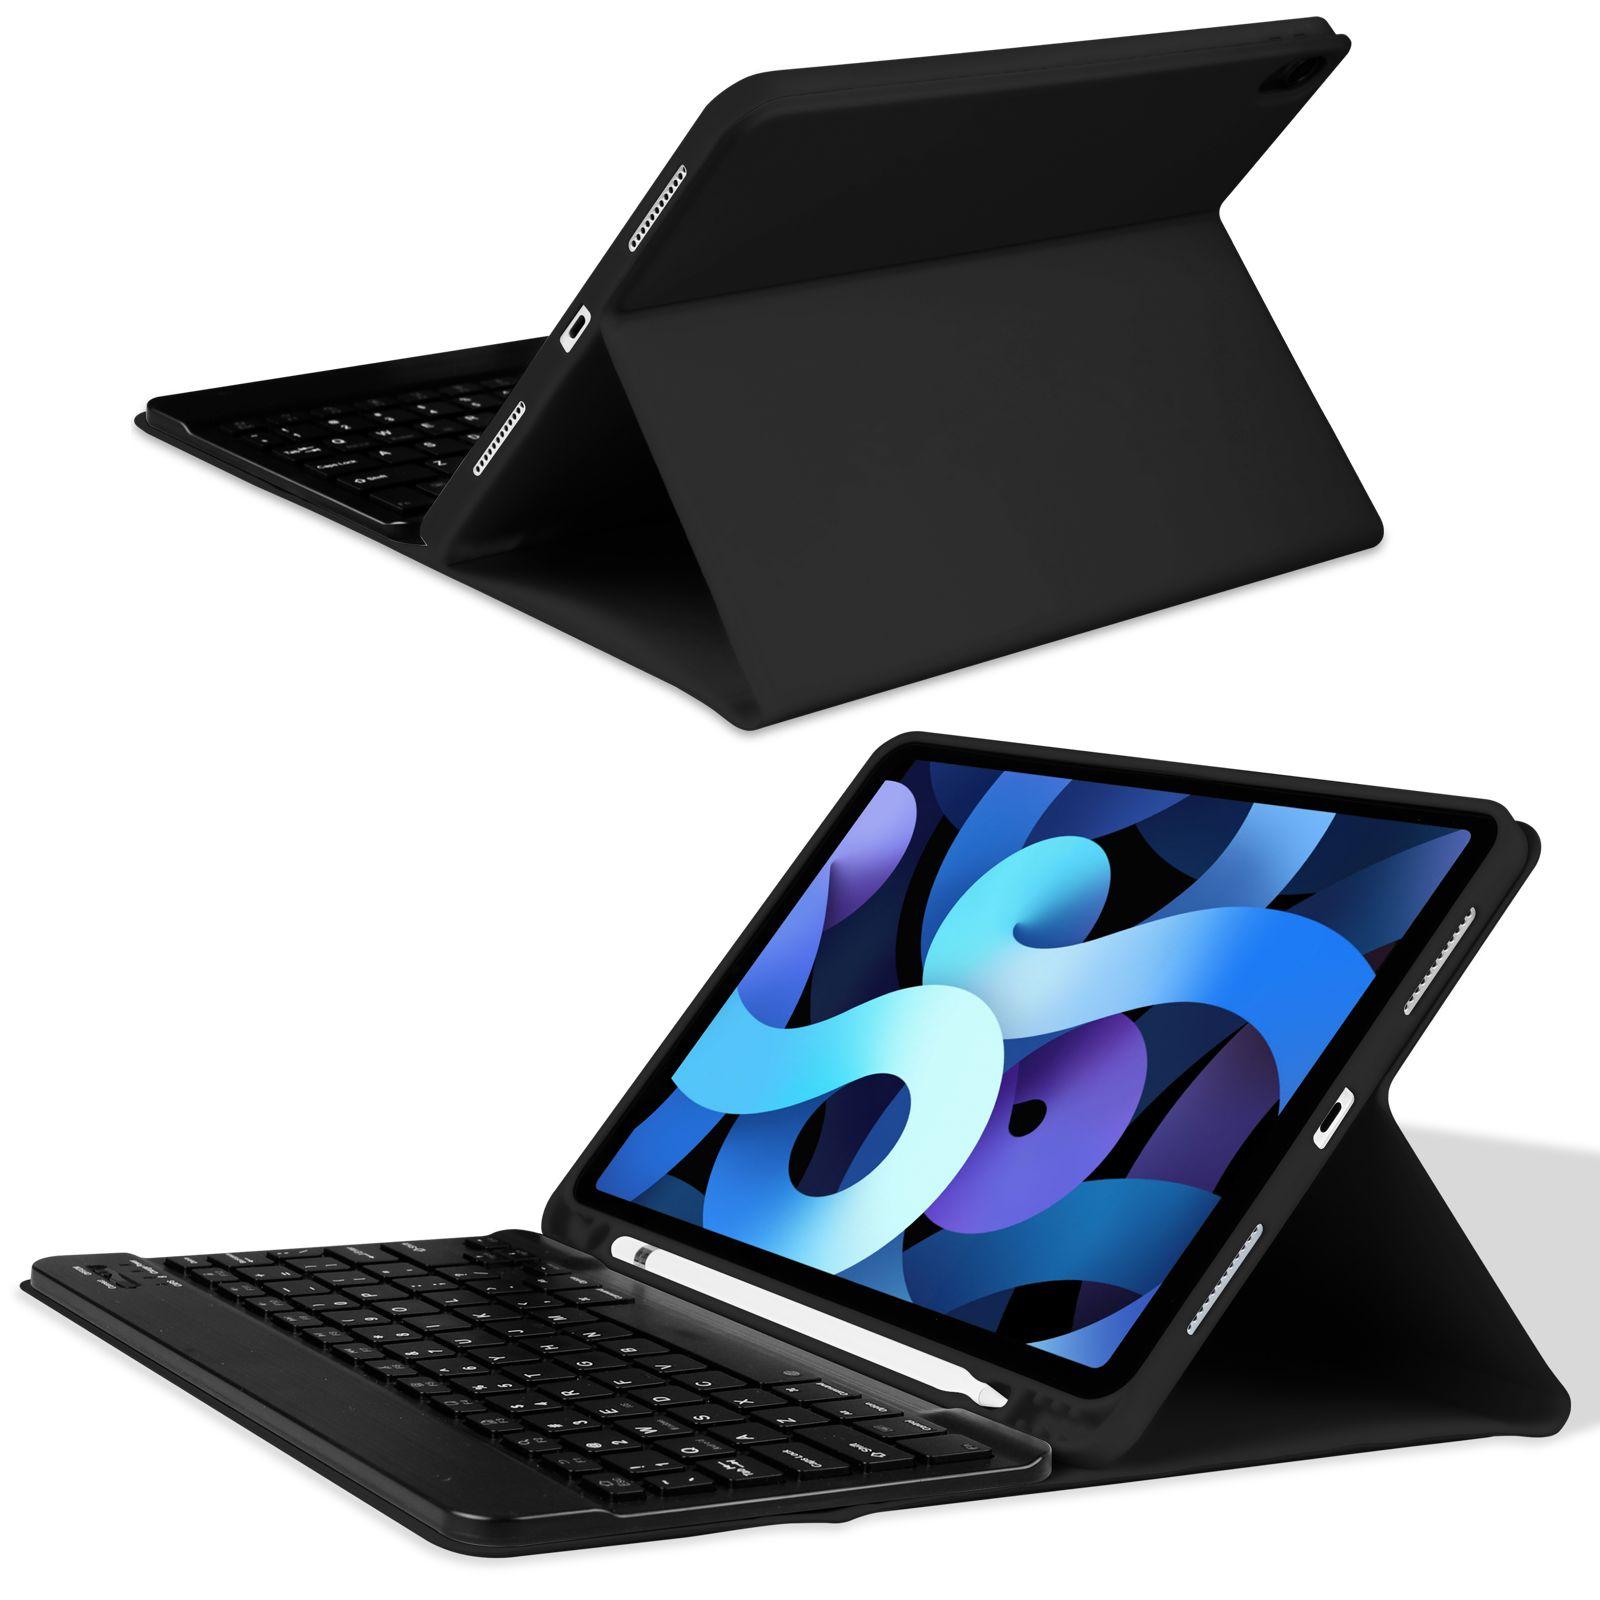 حافظة جلد مع لوحة مفاتيح لاسلكية لجهاز iPad pro 11  لون أسود Premium Leather Case with Wireless Keyboard - Green